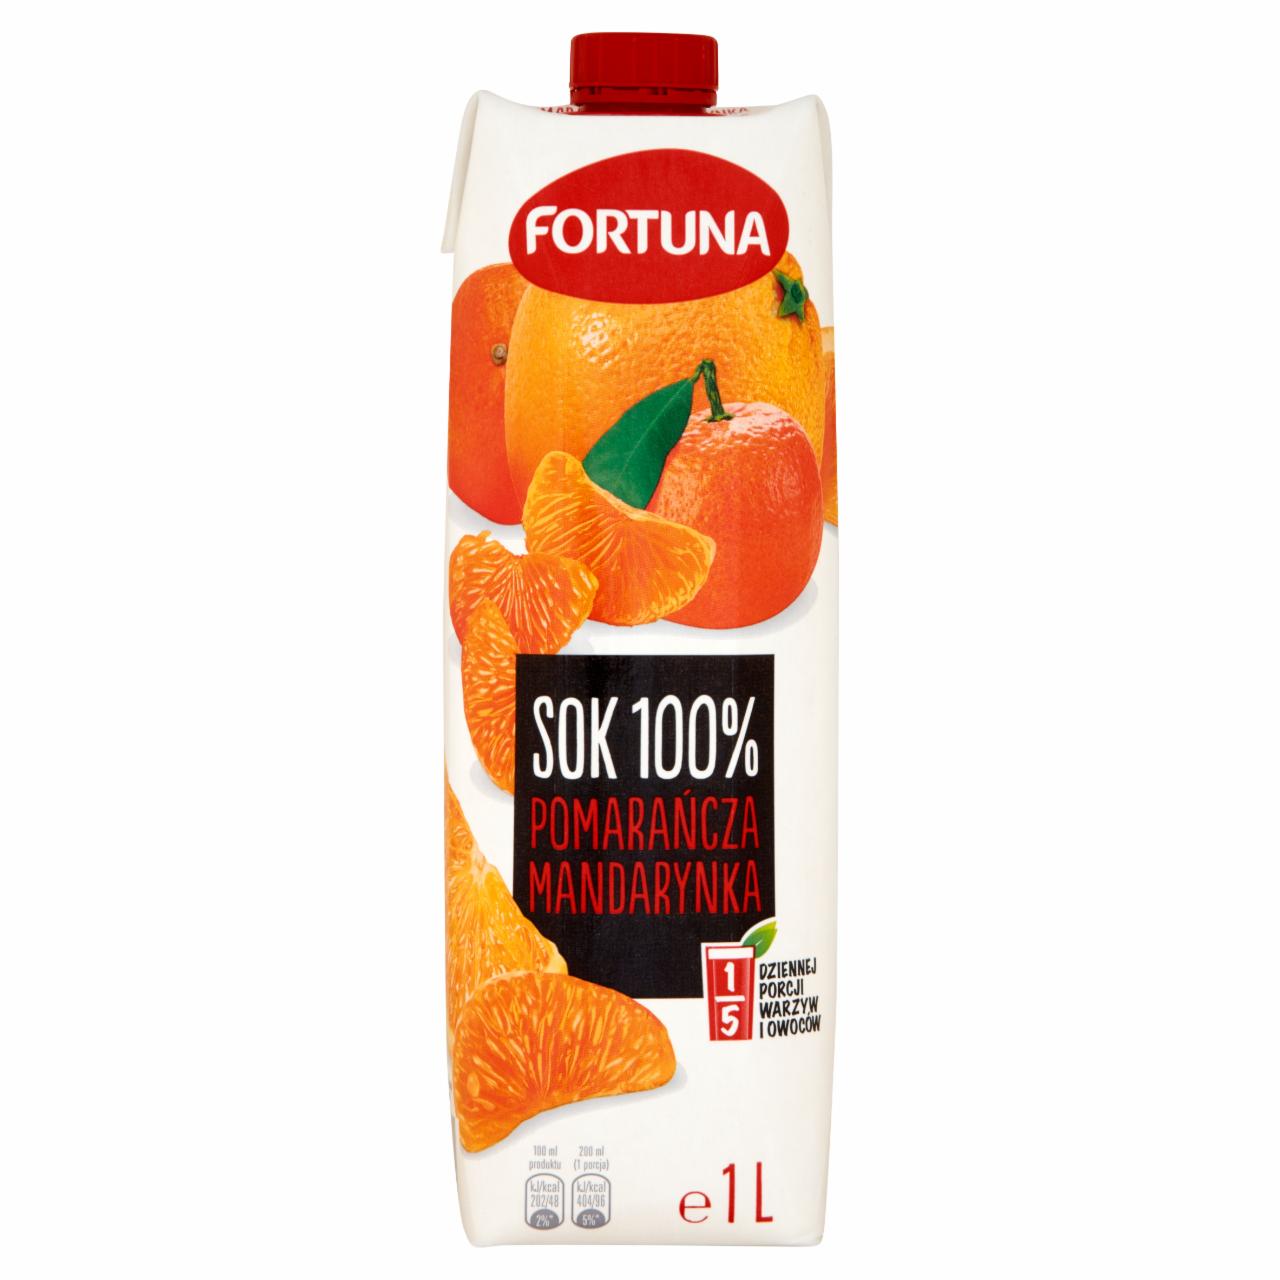 Zdjęcia - Fortuna Pomarańcza mandarynka Sok 100% 1 l